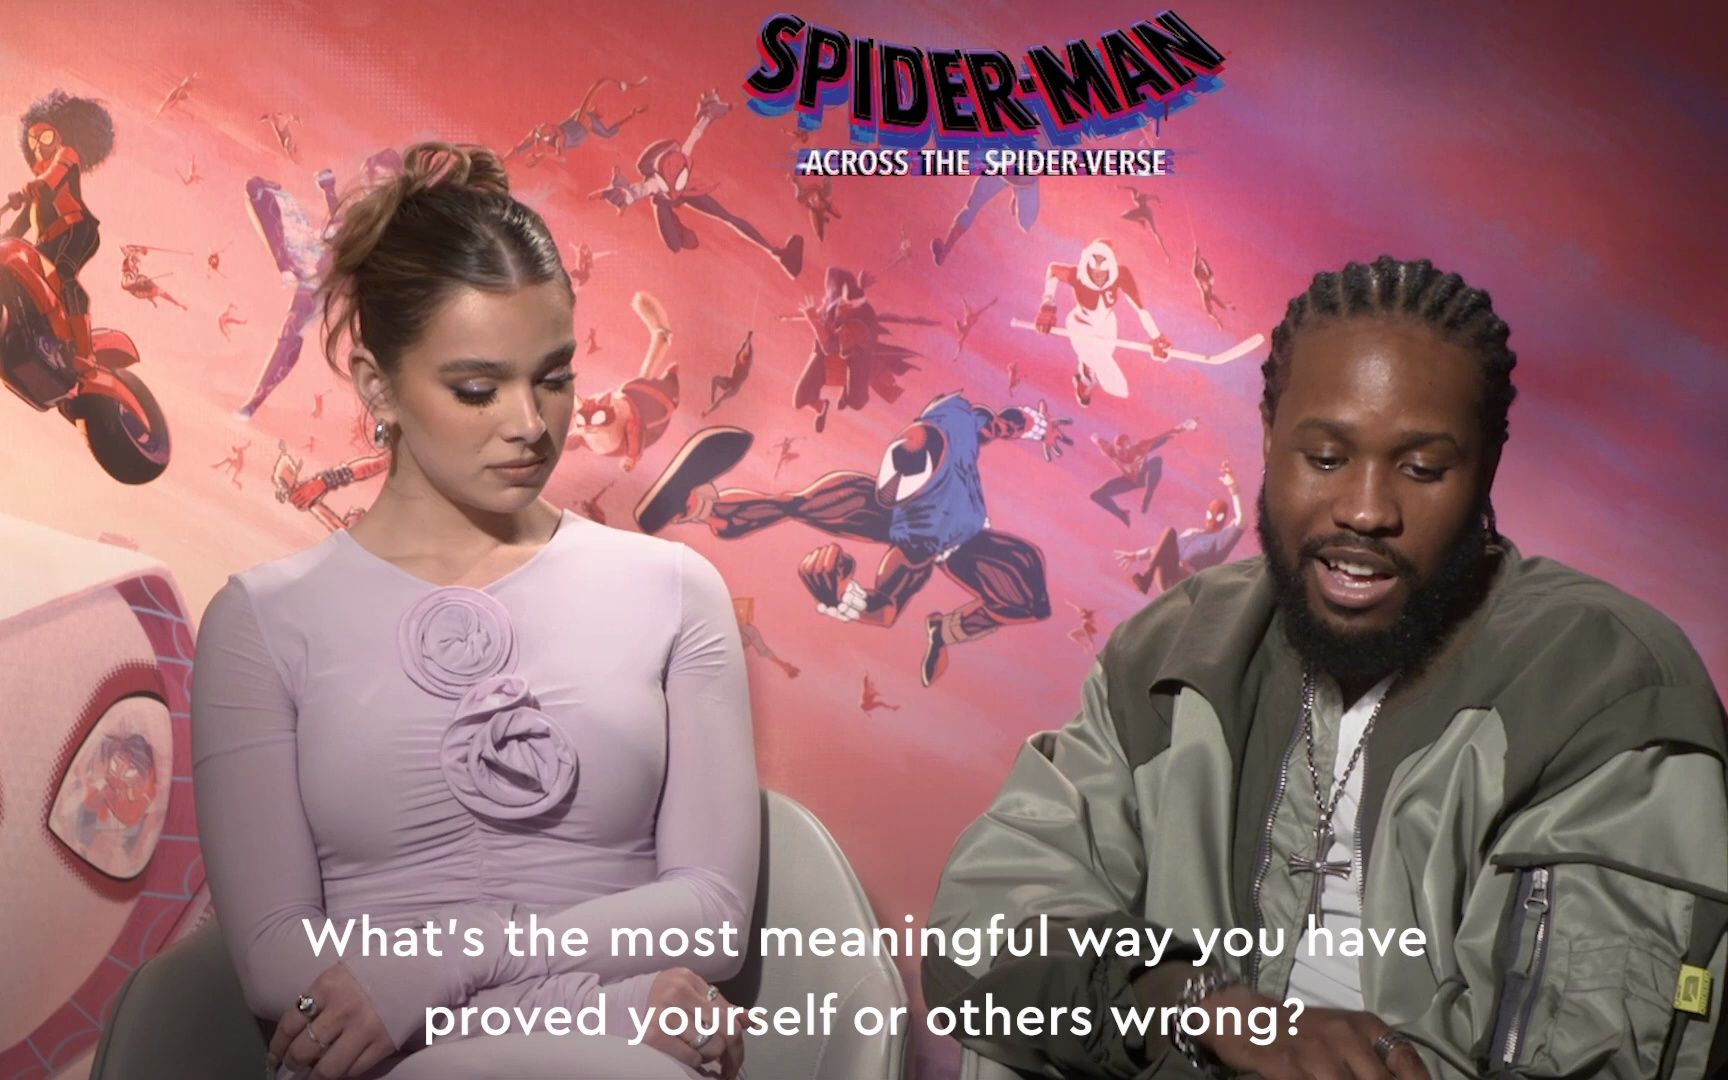 【海莉·斯坦菲尔德】Hailee Steinfeld and Daniel Kaluuya from SpiderMan on Acting Behind